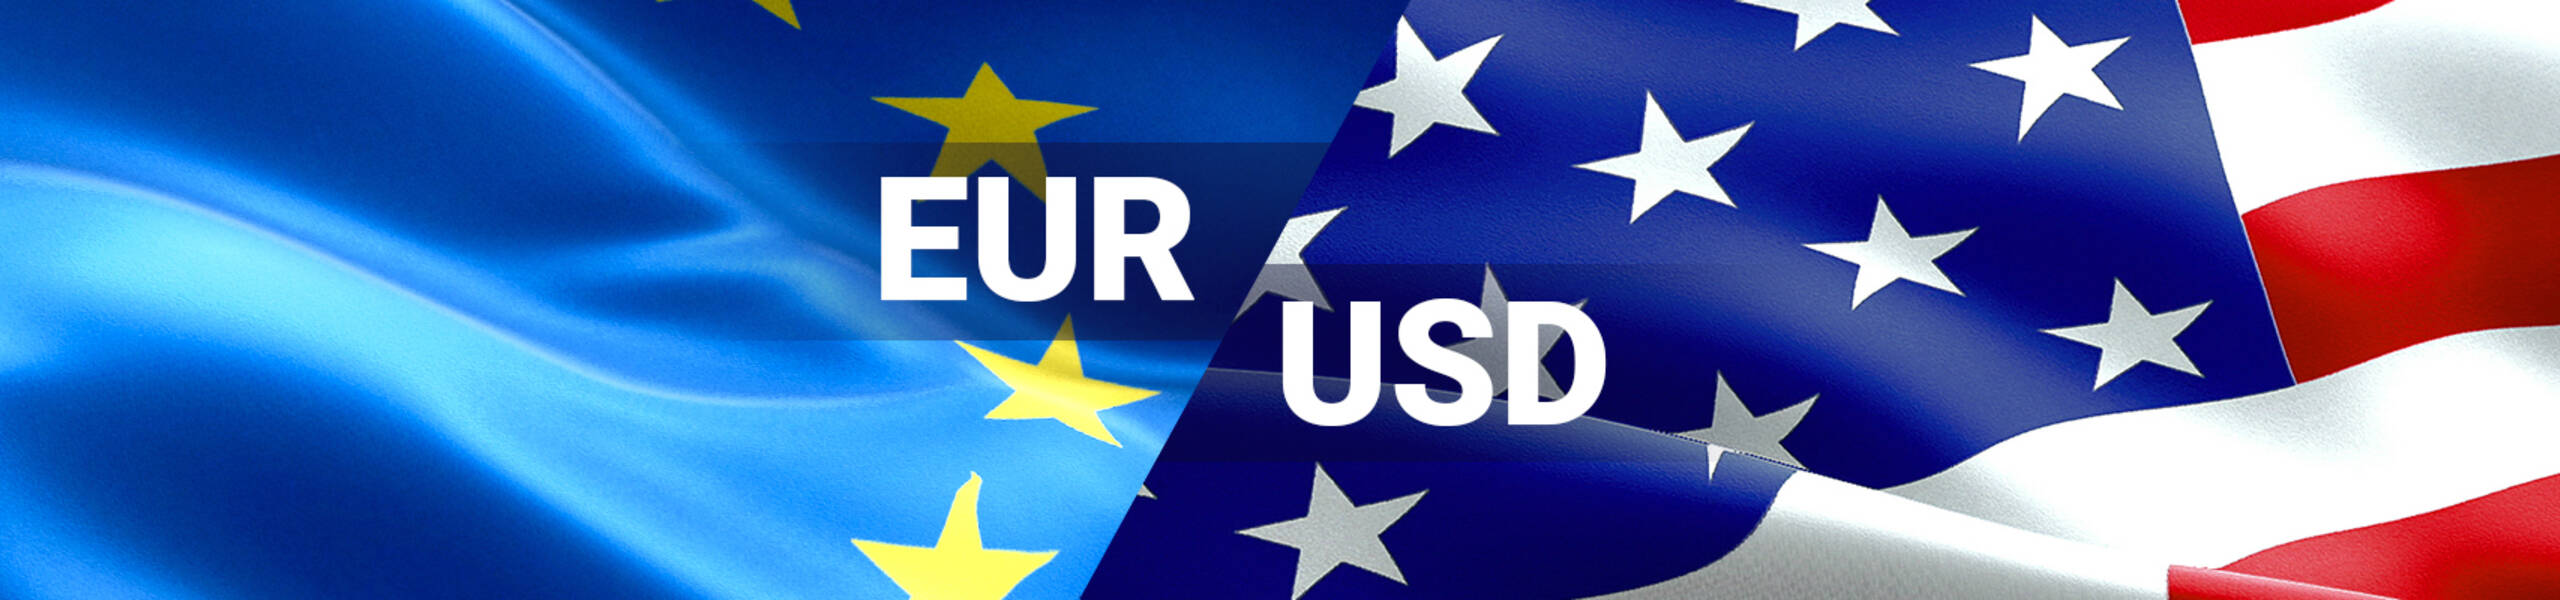 EUR/USD proyectándose a más rebotes en el corto plazo